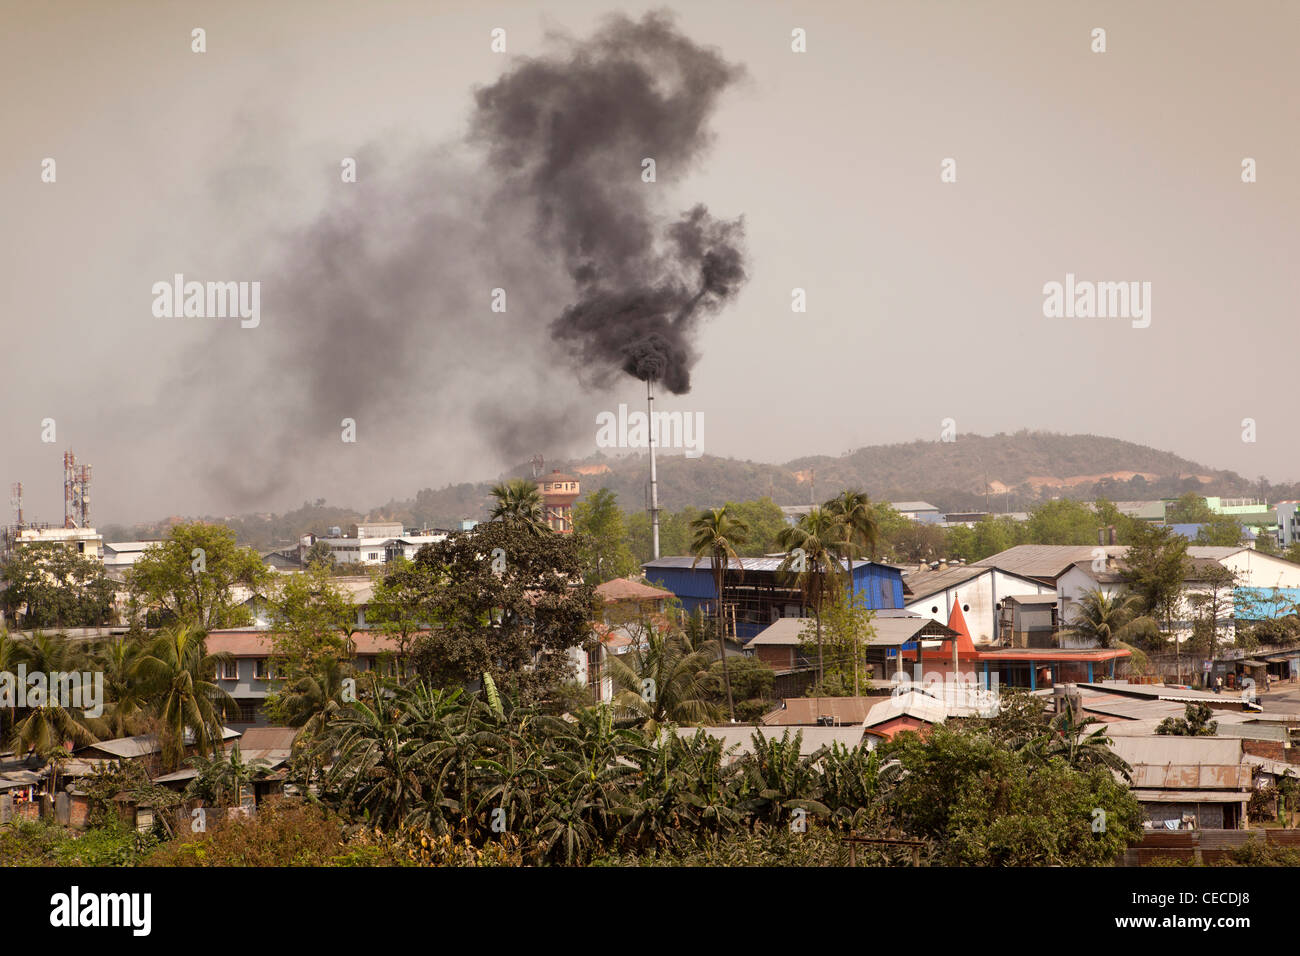 India, Assam, Guwahati, Amingaon, Assam Export Promotion Industrial Park (EPIP) chimney emitting black smoke Stock Photo